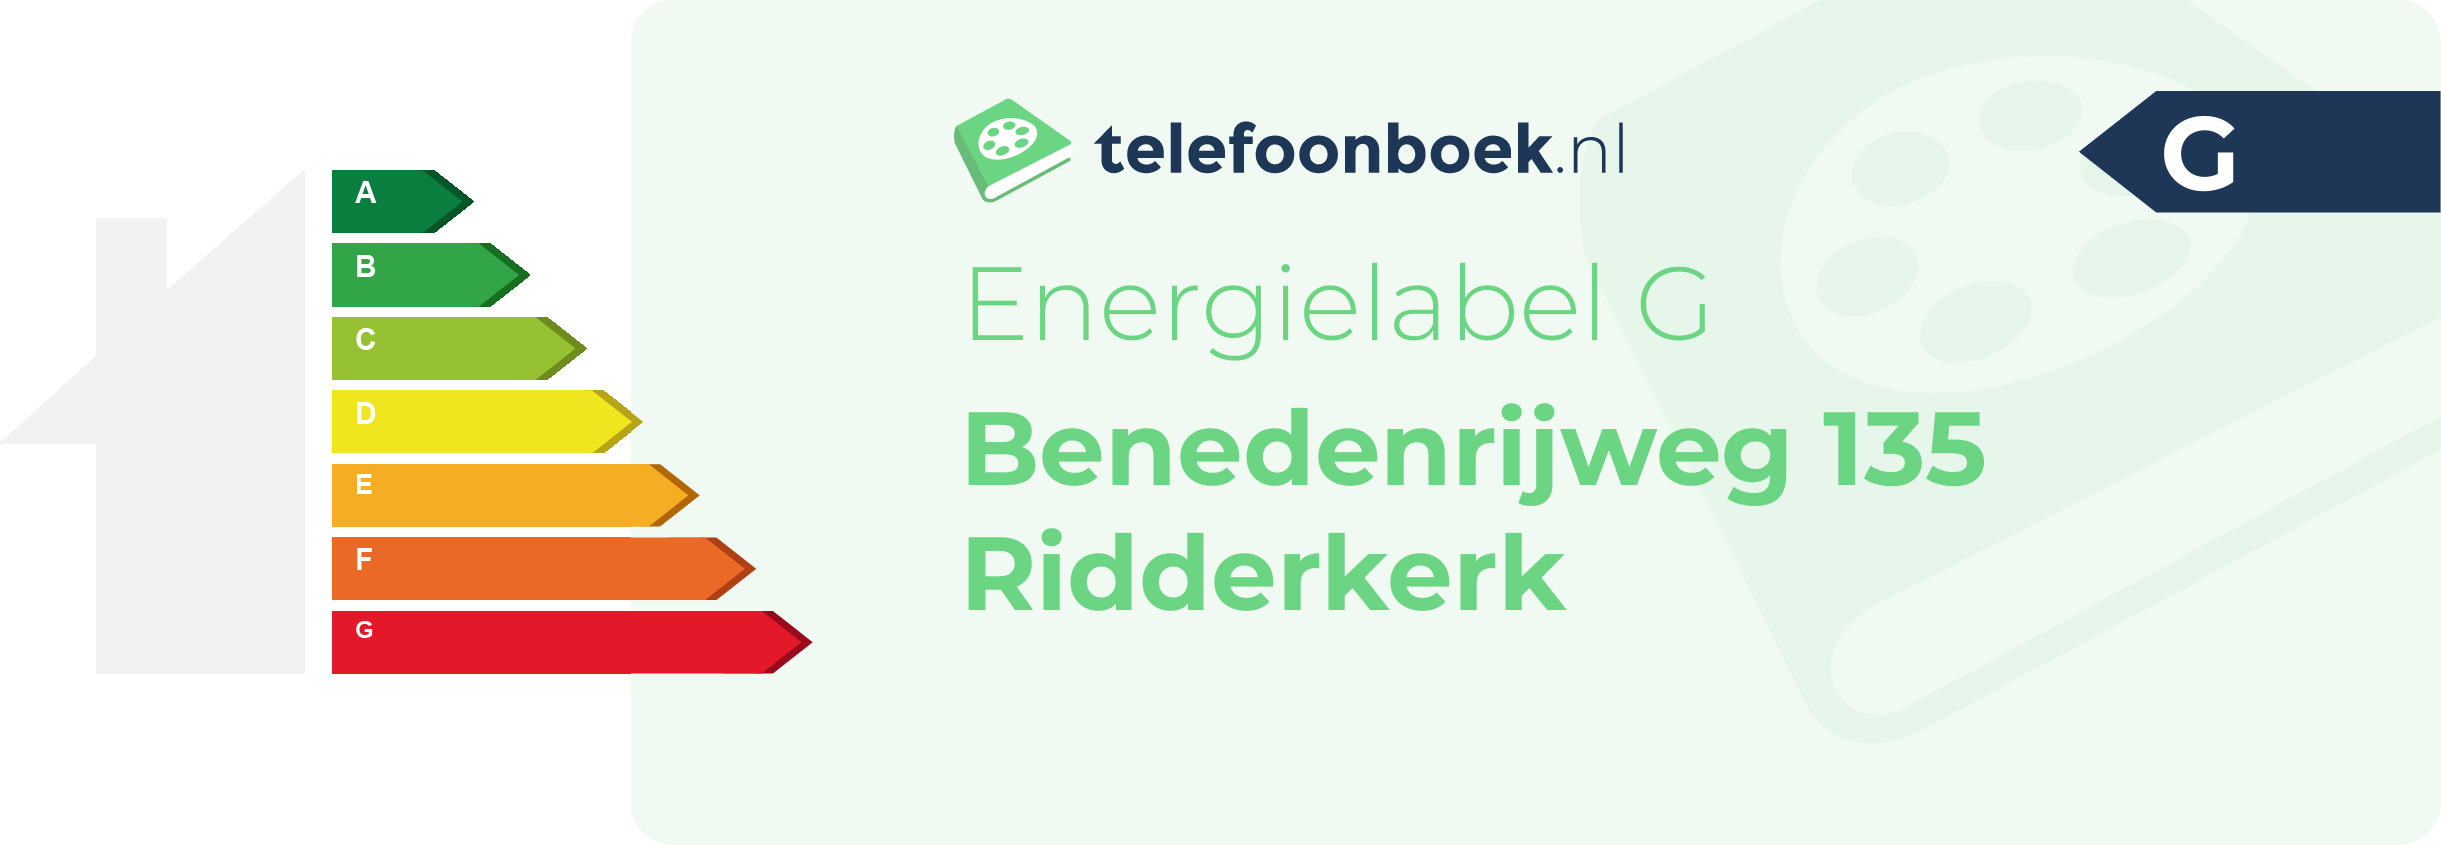 Energielabel Benedenrijweg 135 Ridderkerk